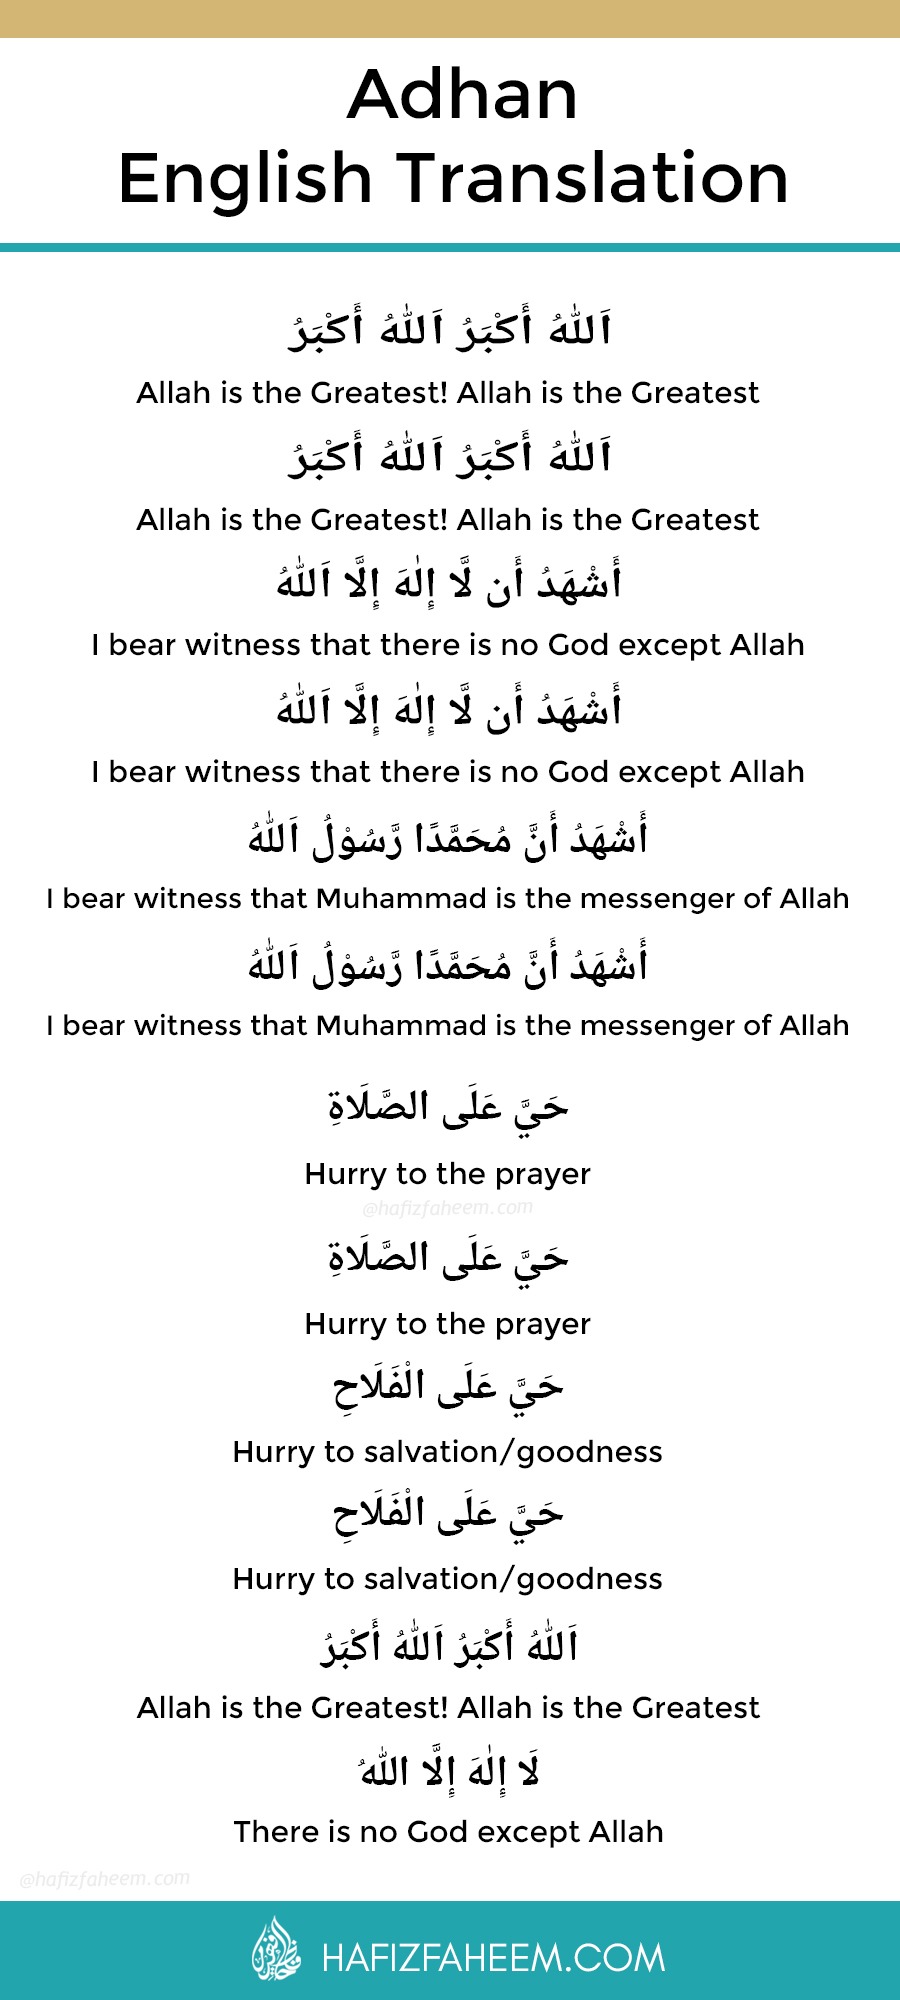 Աղոթքի իսլամական կոչը (Ադան) թարգմանված է անգլերեն